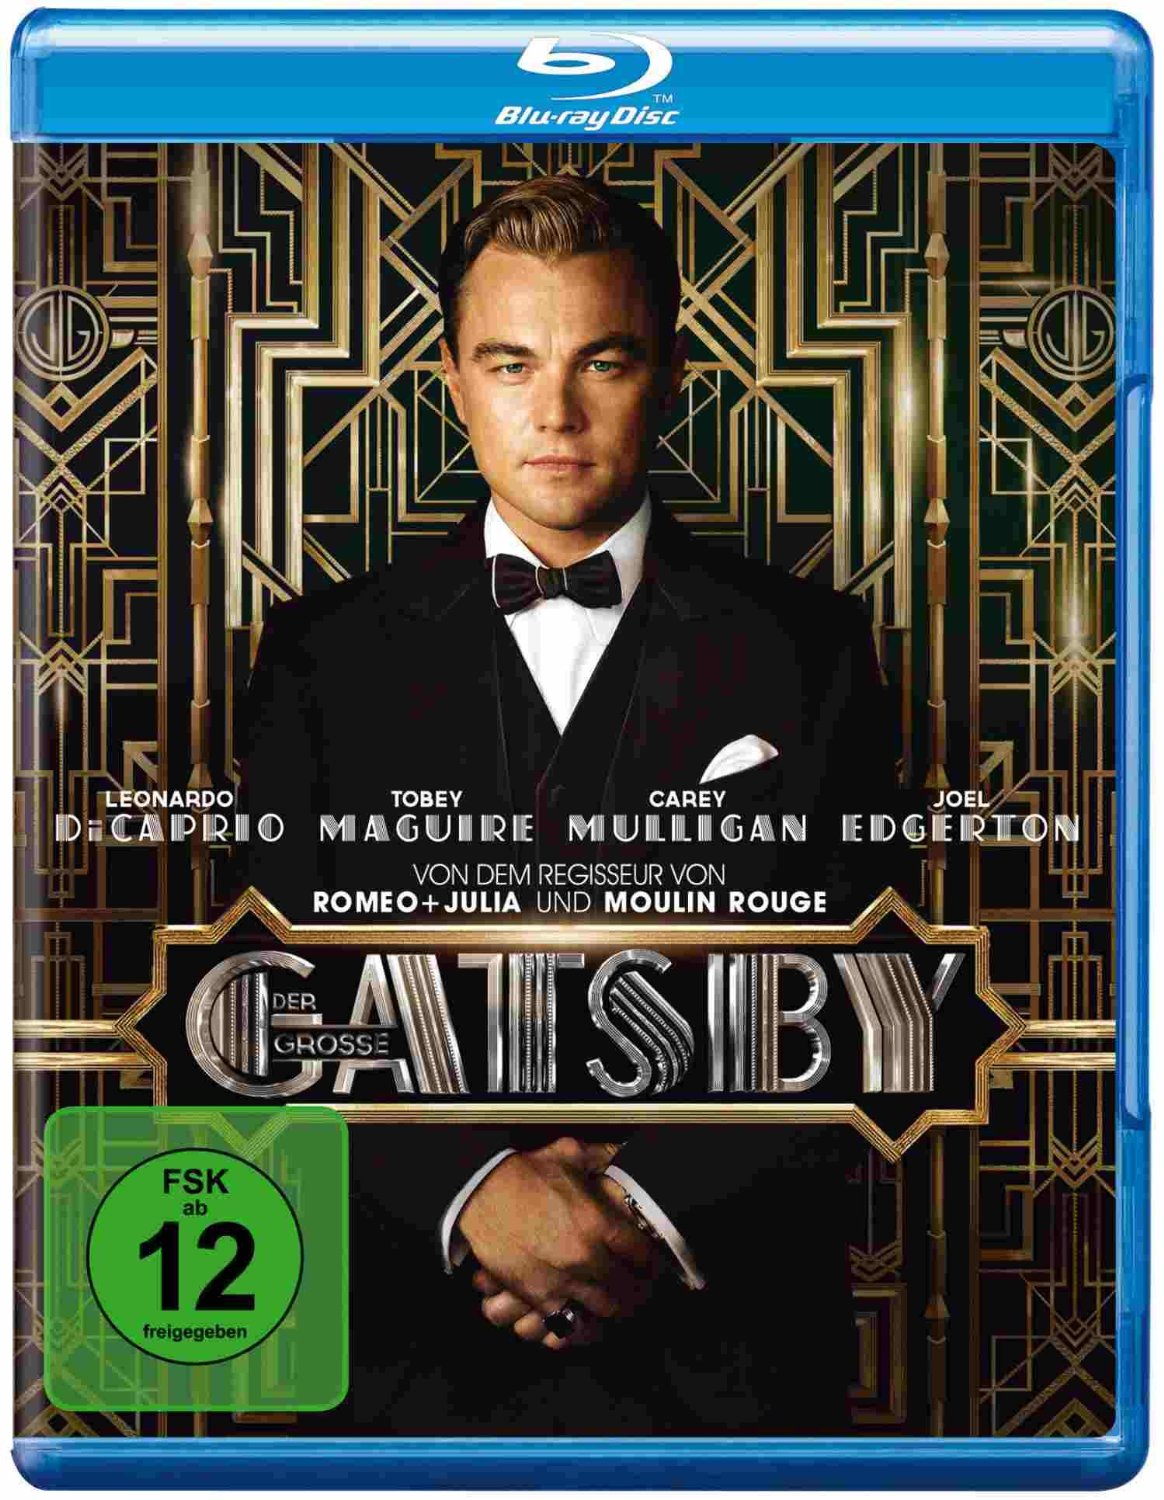 Der große Gatsby [Blu-ray] für nur 6,40 Euro inkl. Versand